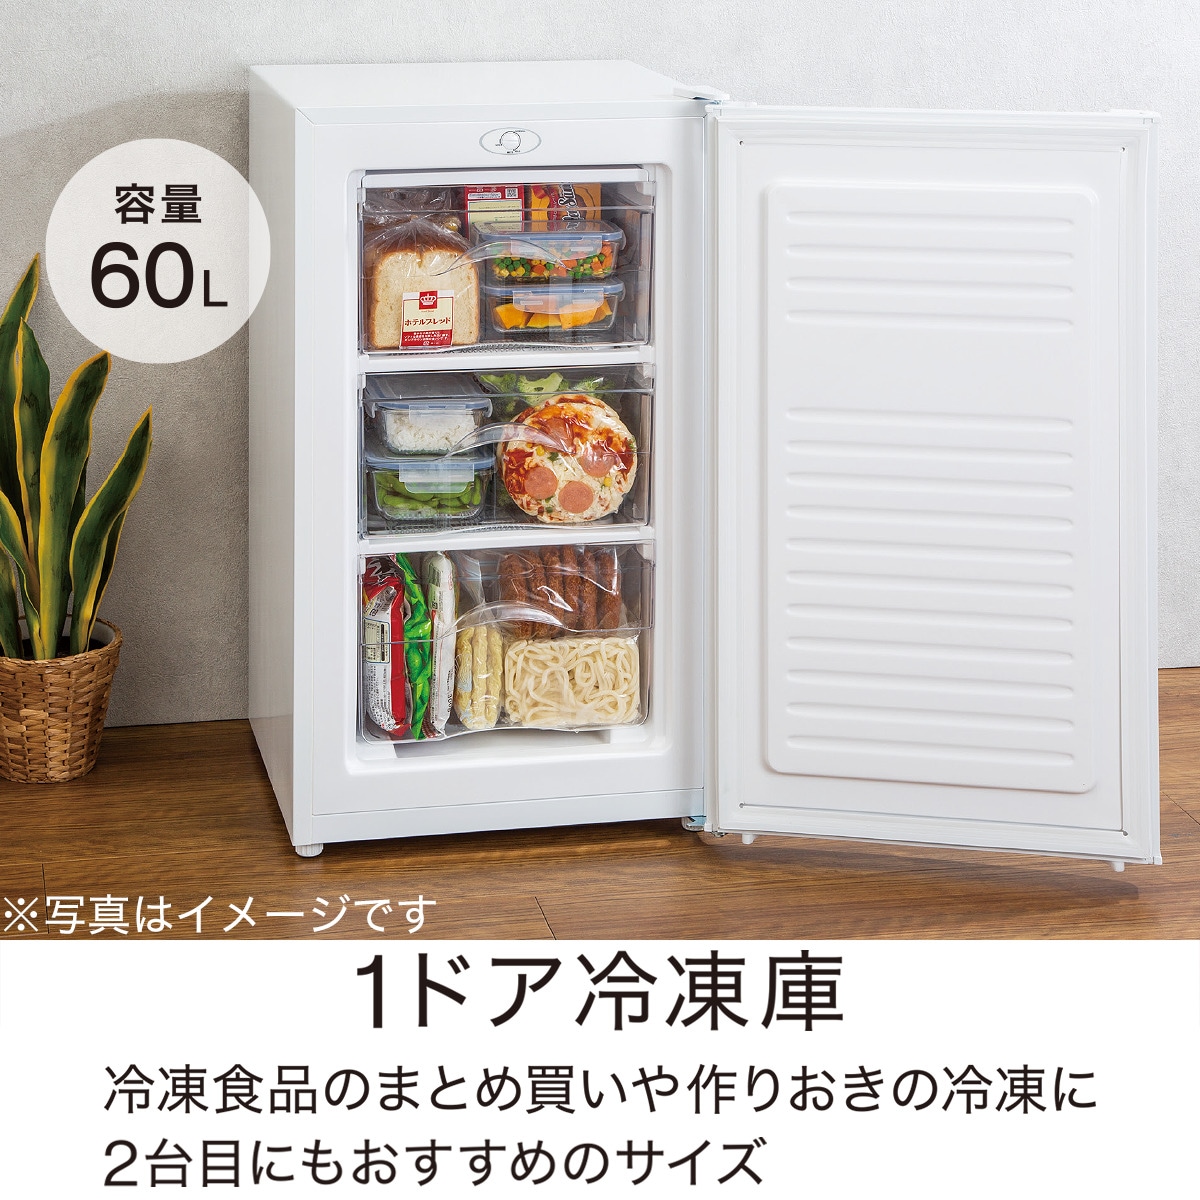 最新]セカンド冷凍庫のおすすめ8機種を比較！冷凍食品のストックに便利